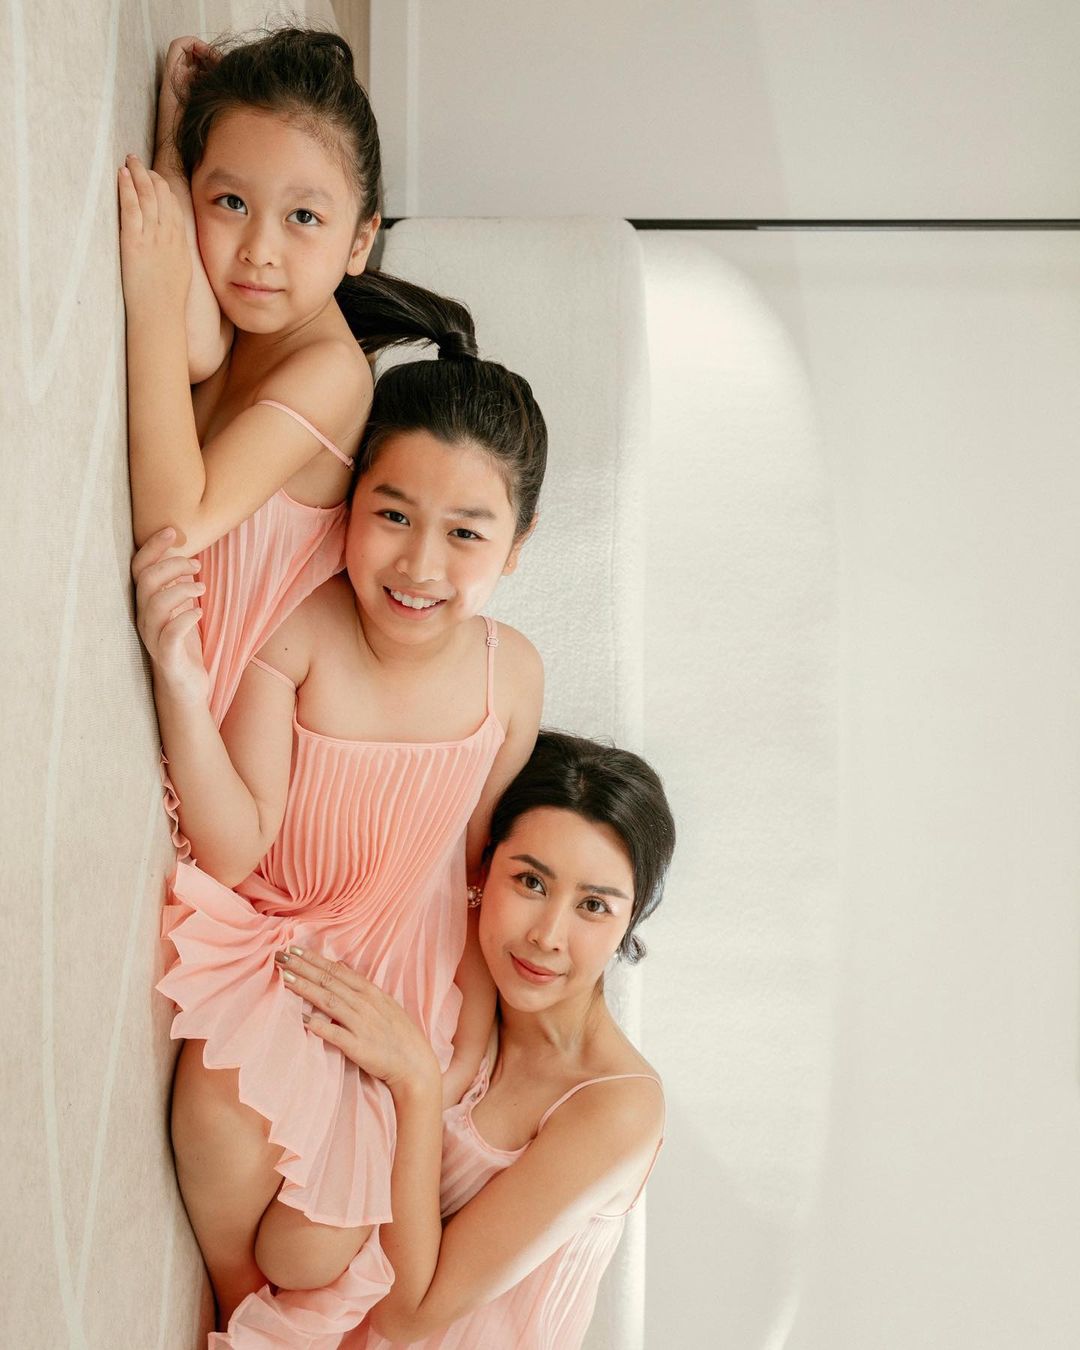 Lưu Hương Giang cùng hai con gái diện đầm hồng ton-sur-ton tạo dáng trên nền nhà. 3 mẹ con nữ ca sĩ được khen ngợi với vẻ tươi tắn, rạng ngời.